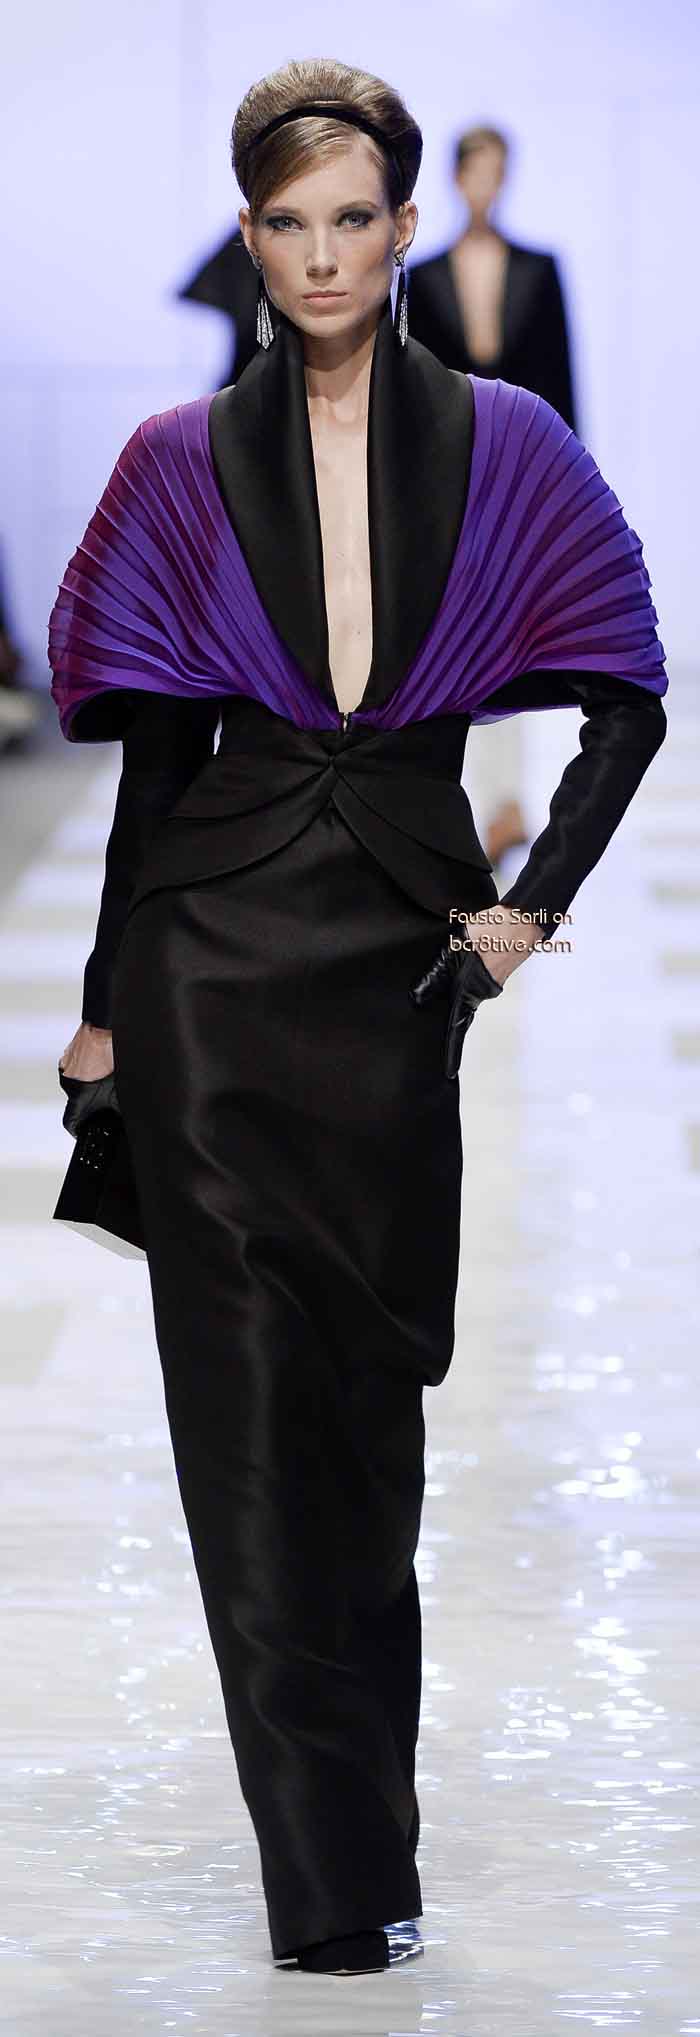 Fausto Sarli Fall Winter 2013-14 Haute Couture